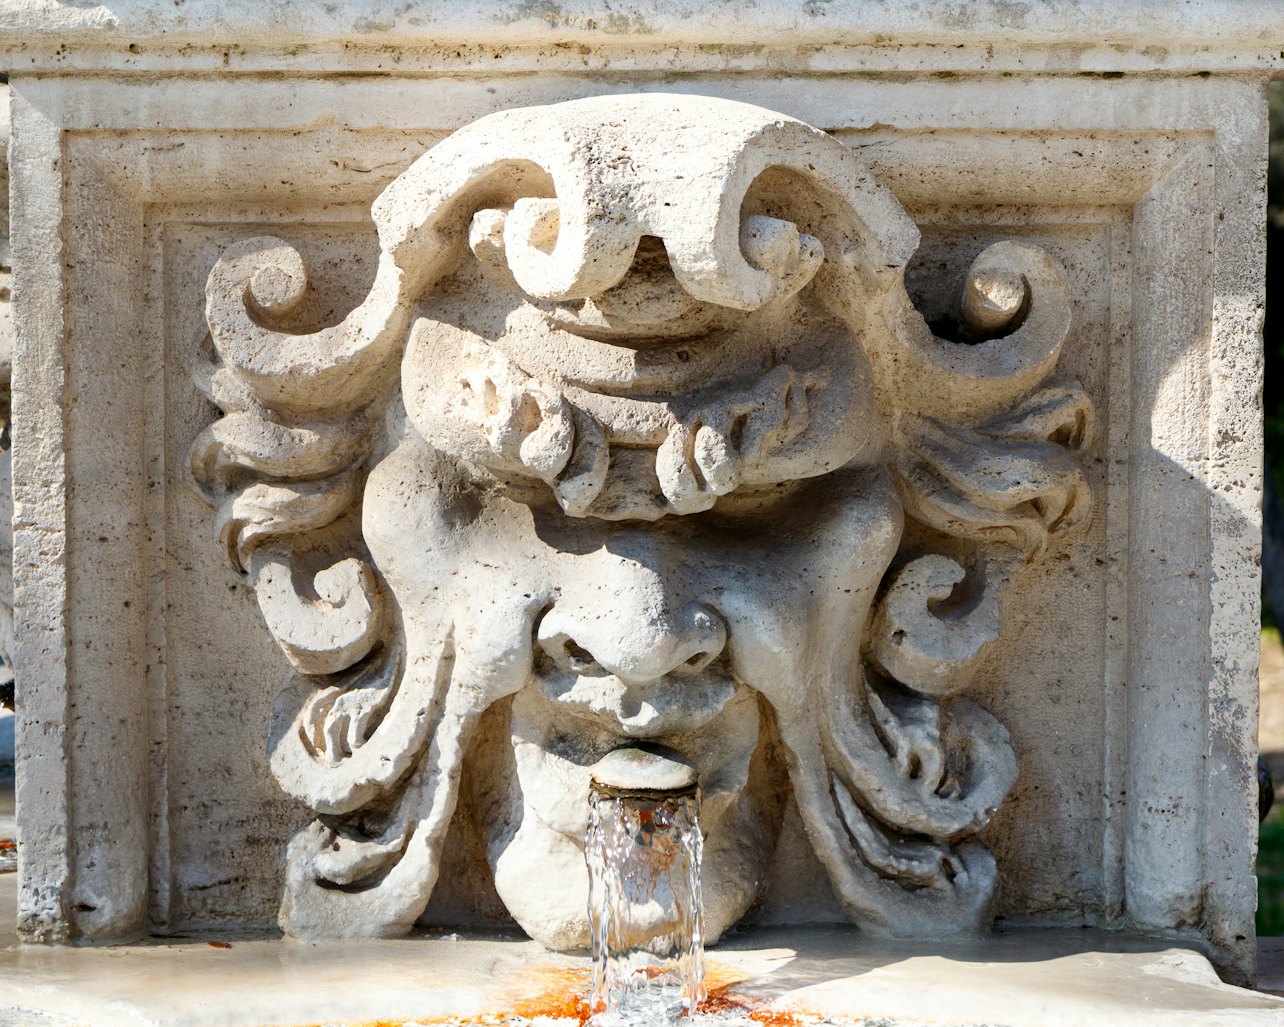 Galeria Borghese: acesso rápido - Acomodações em Roma